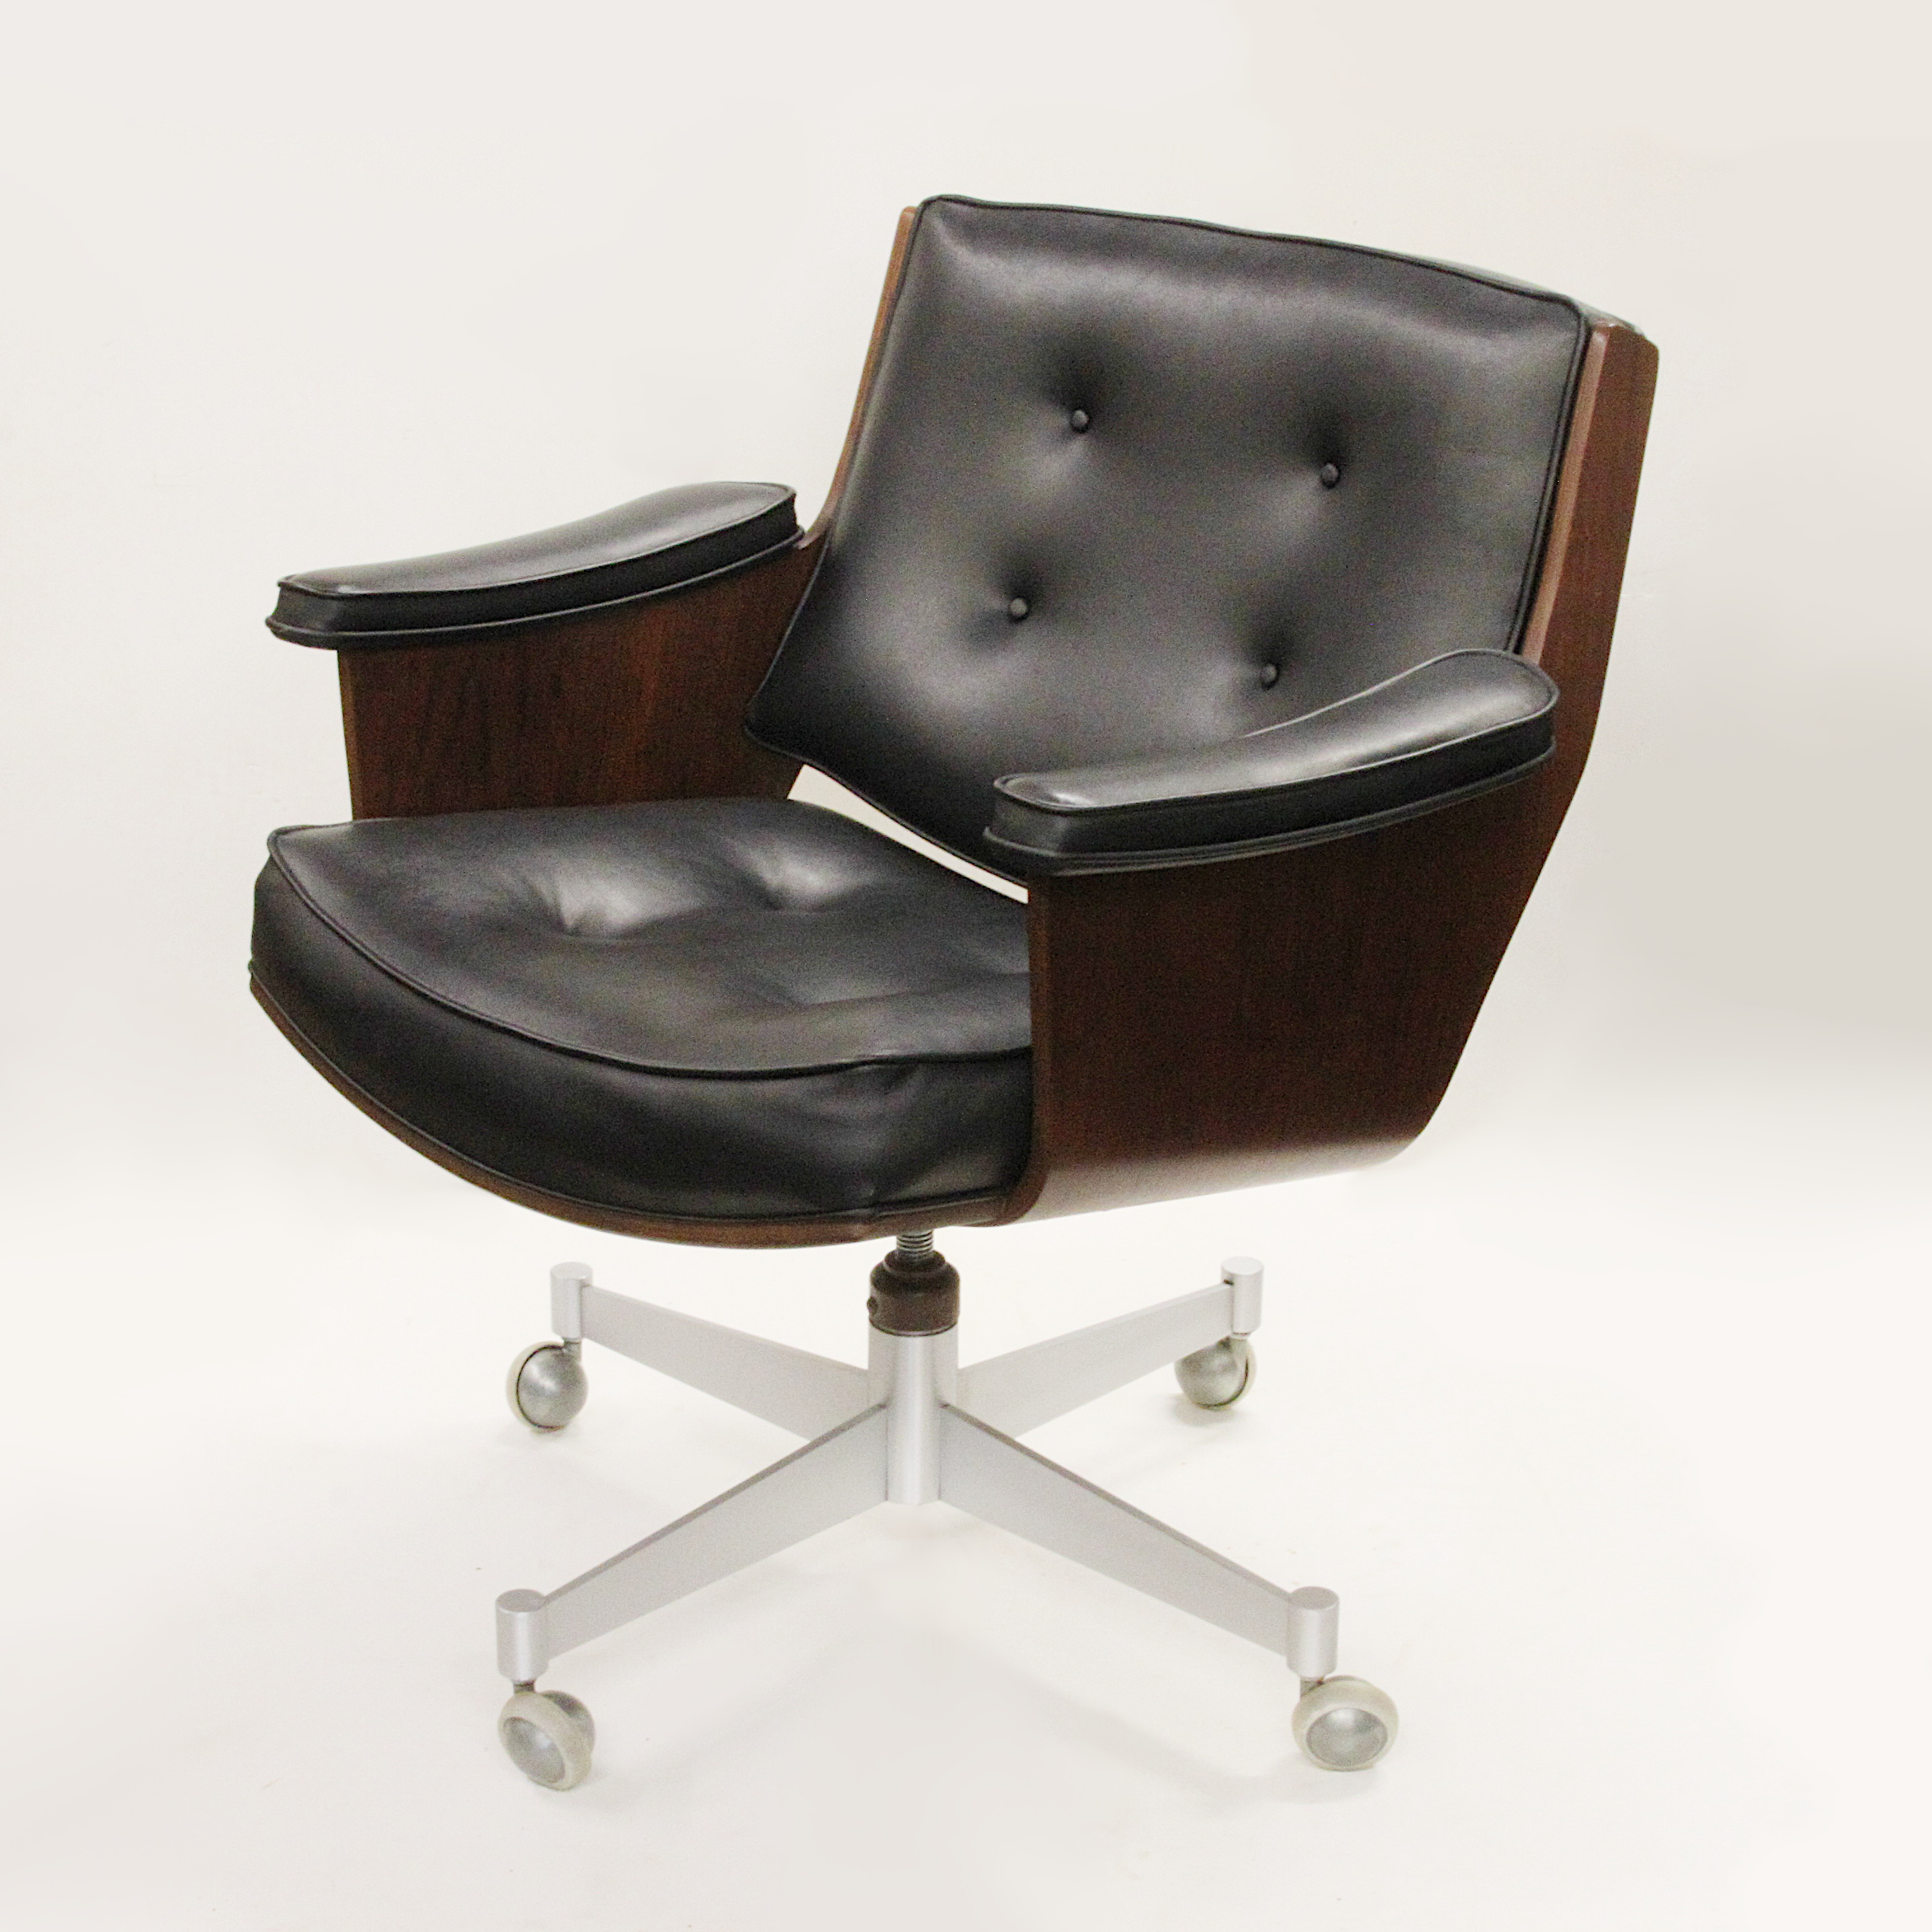 1657552269-Thonet-Molded-Plywood-Swivel-Desk-Chair.jpg